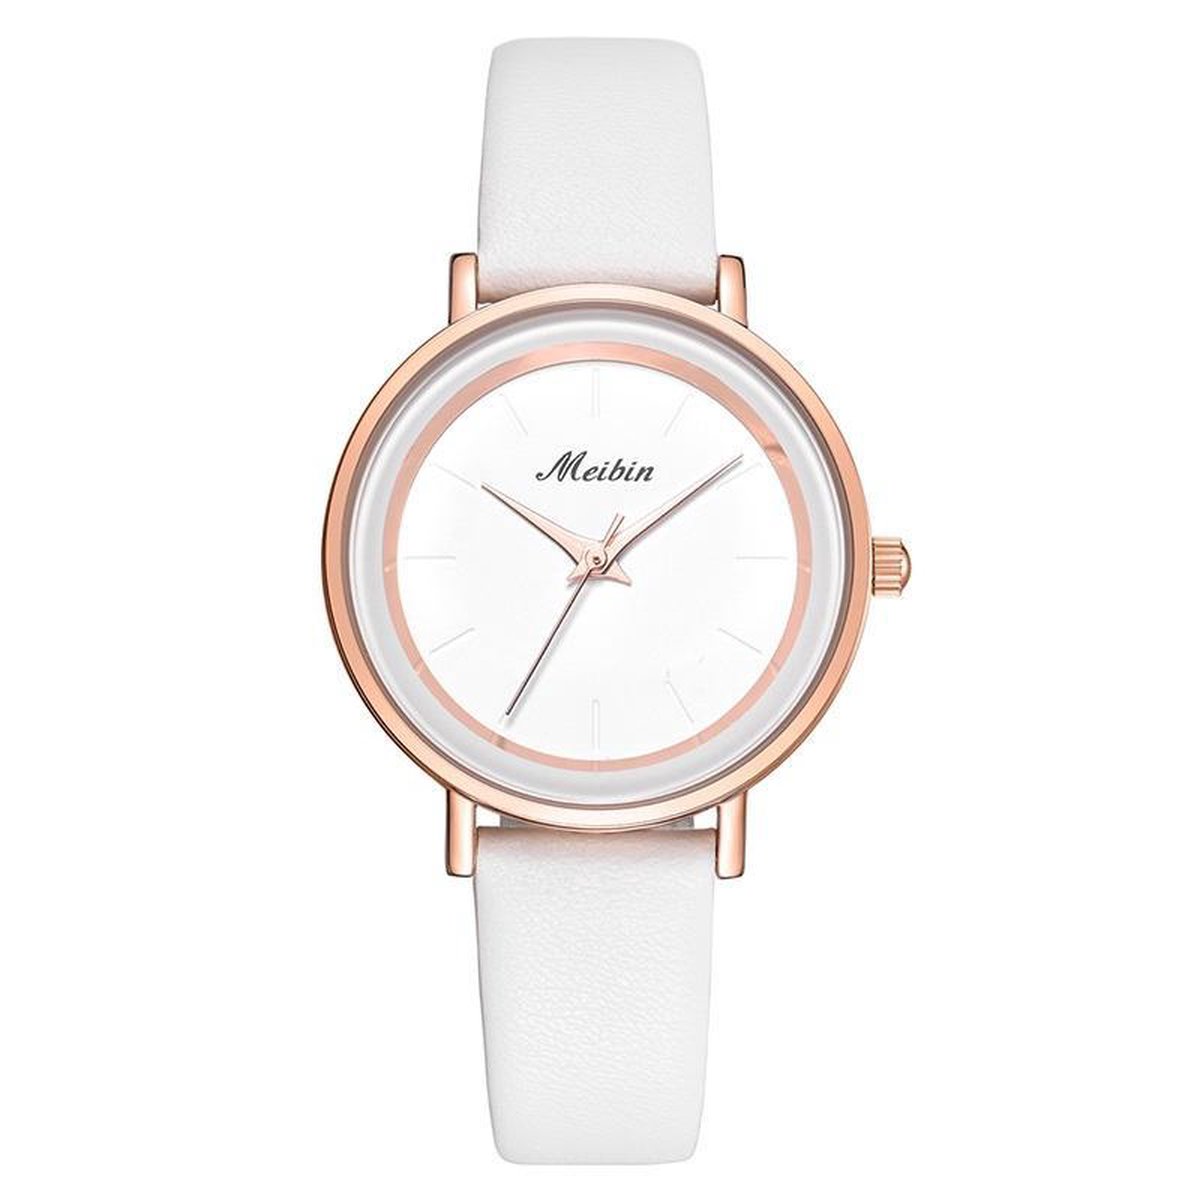 Longbo - Meibin - Dames Horloge - Wit/Rosé/Wit - Ø 32mm